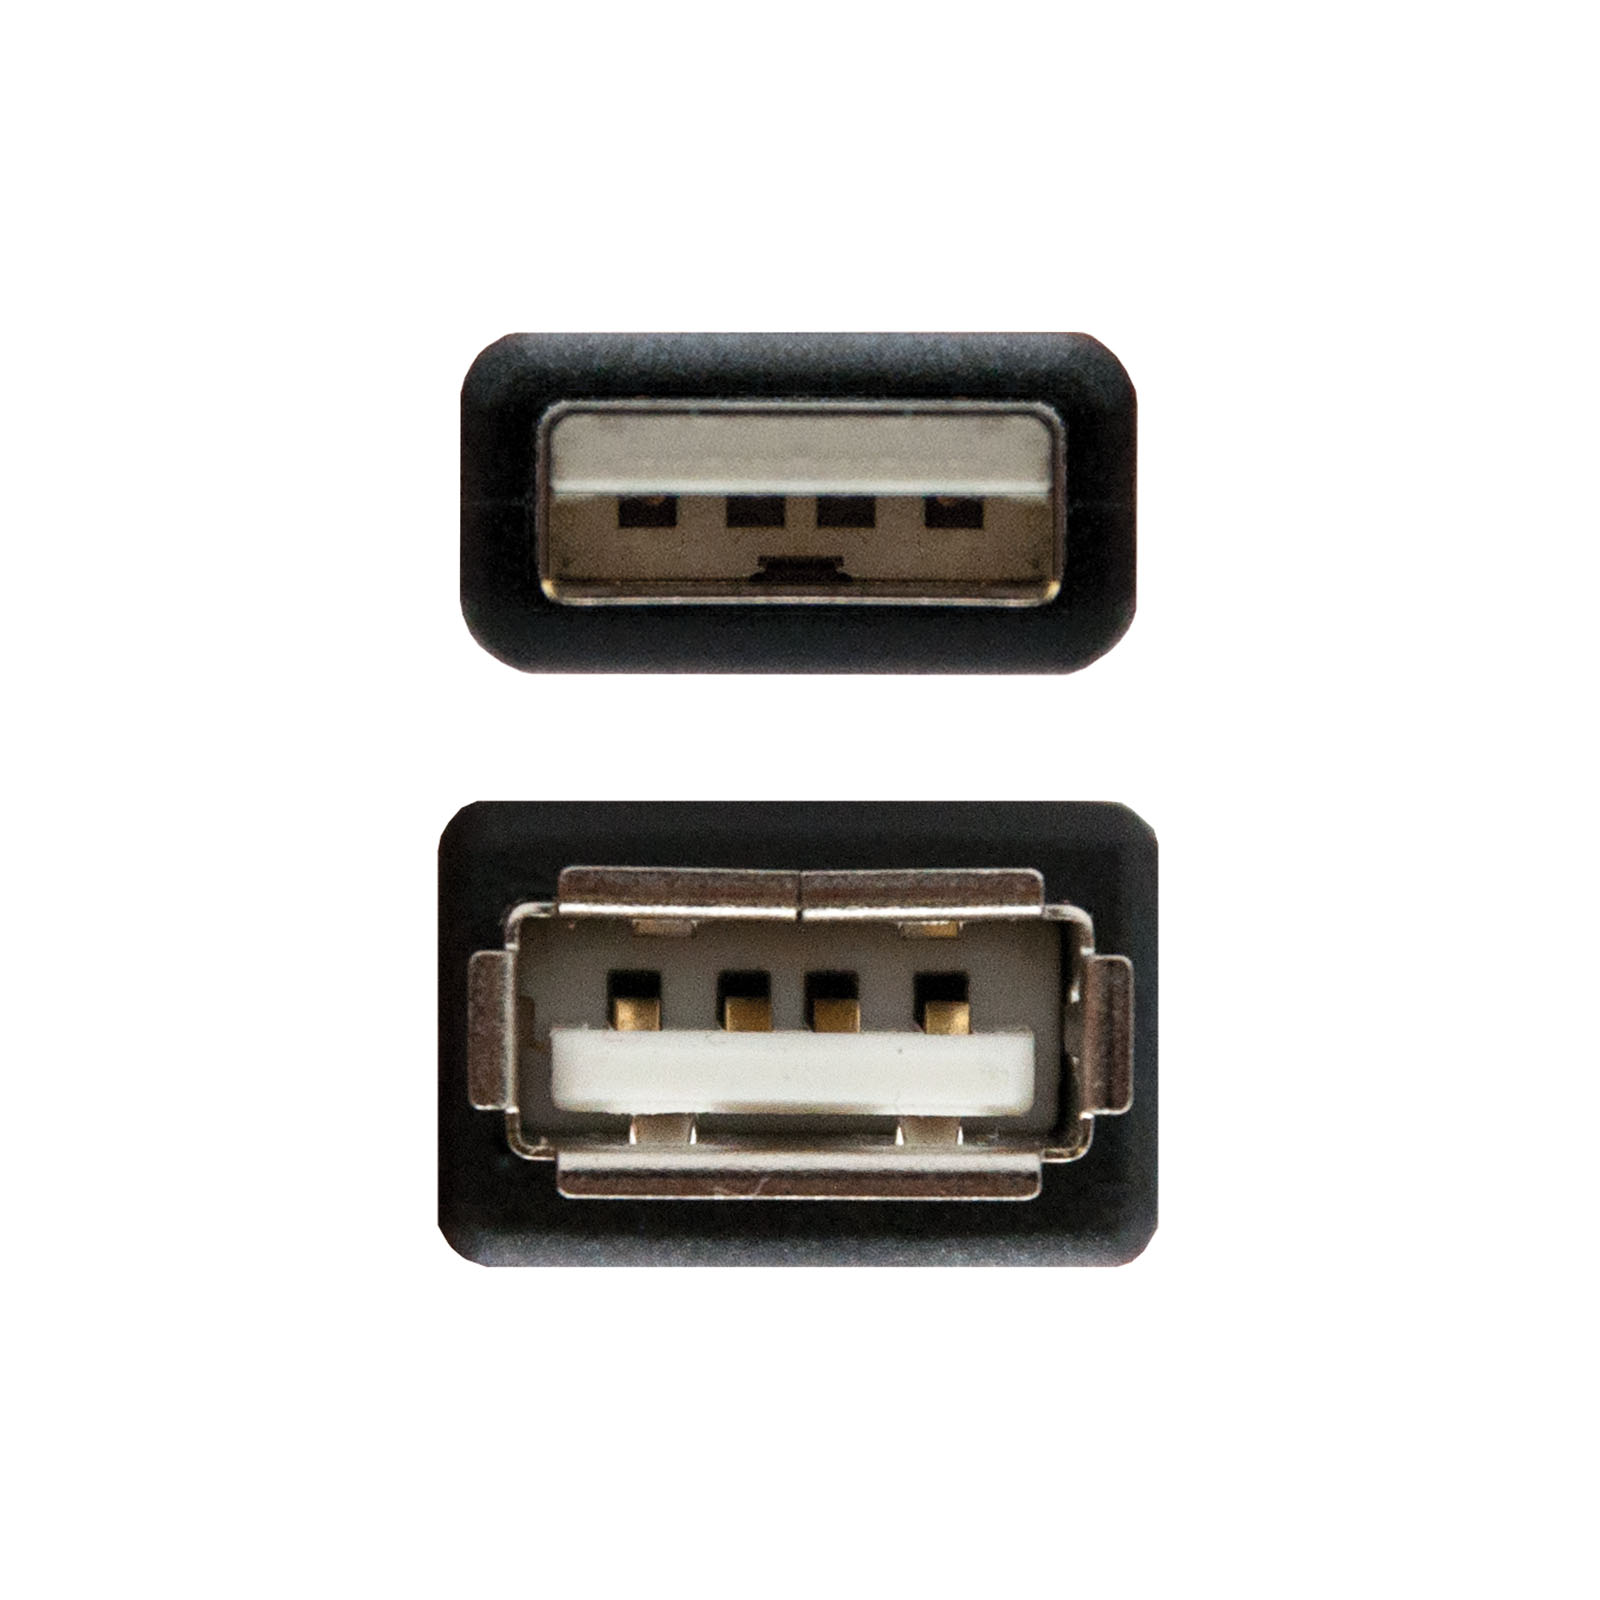 Câble d'extension Nanocable USB-A 2.0 Mâle vers USB-A Femelle 1.80m